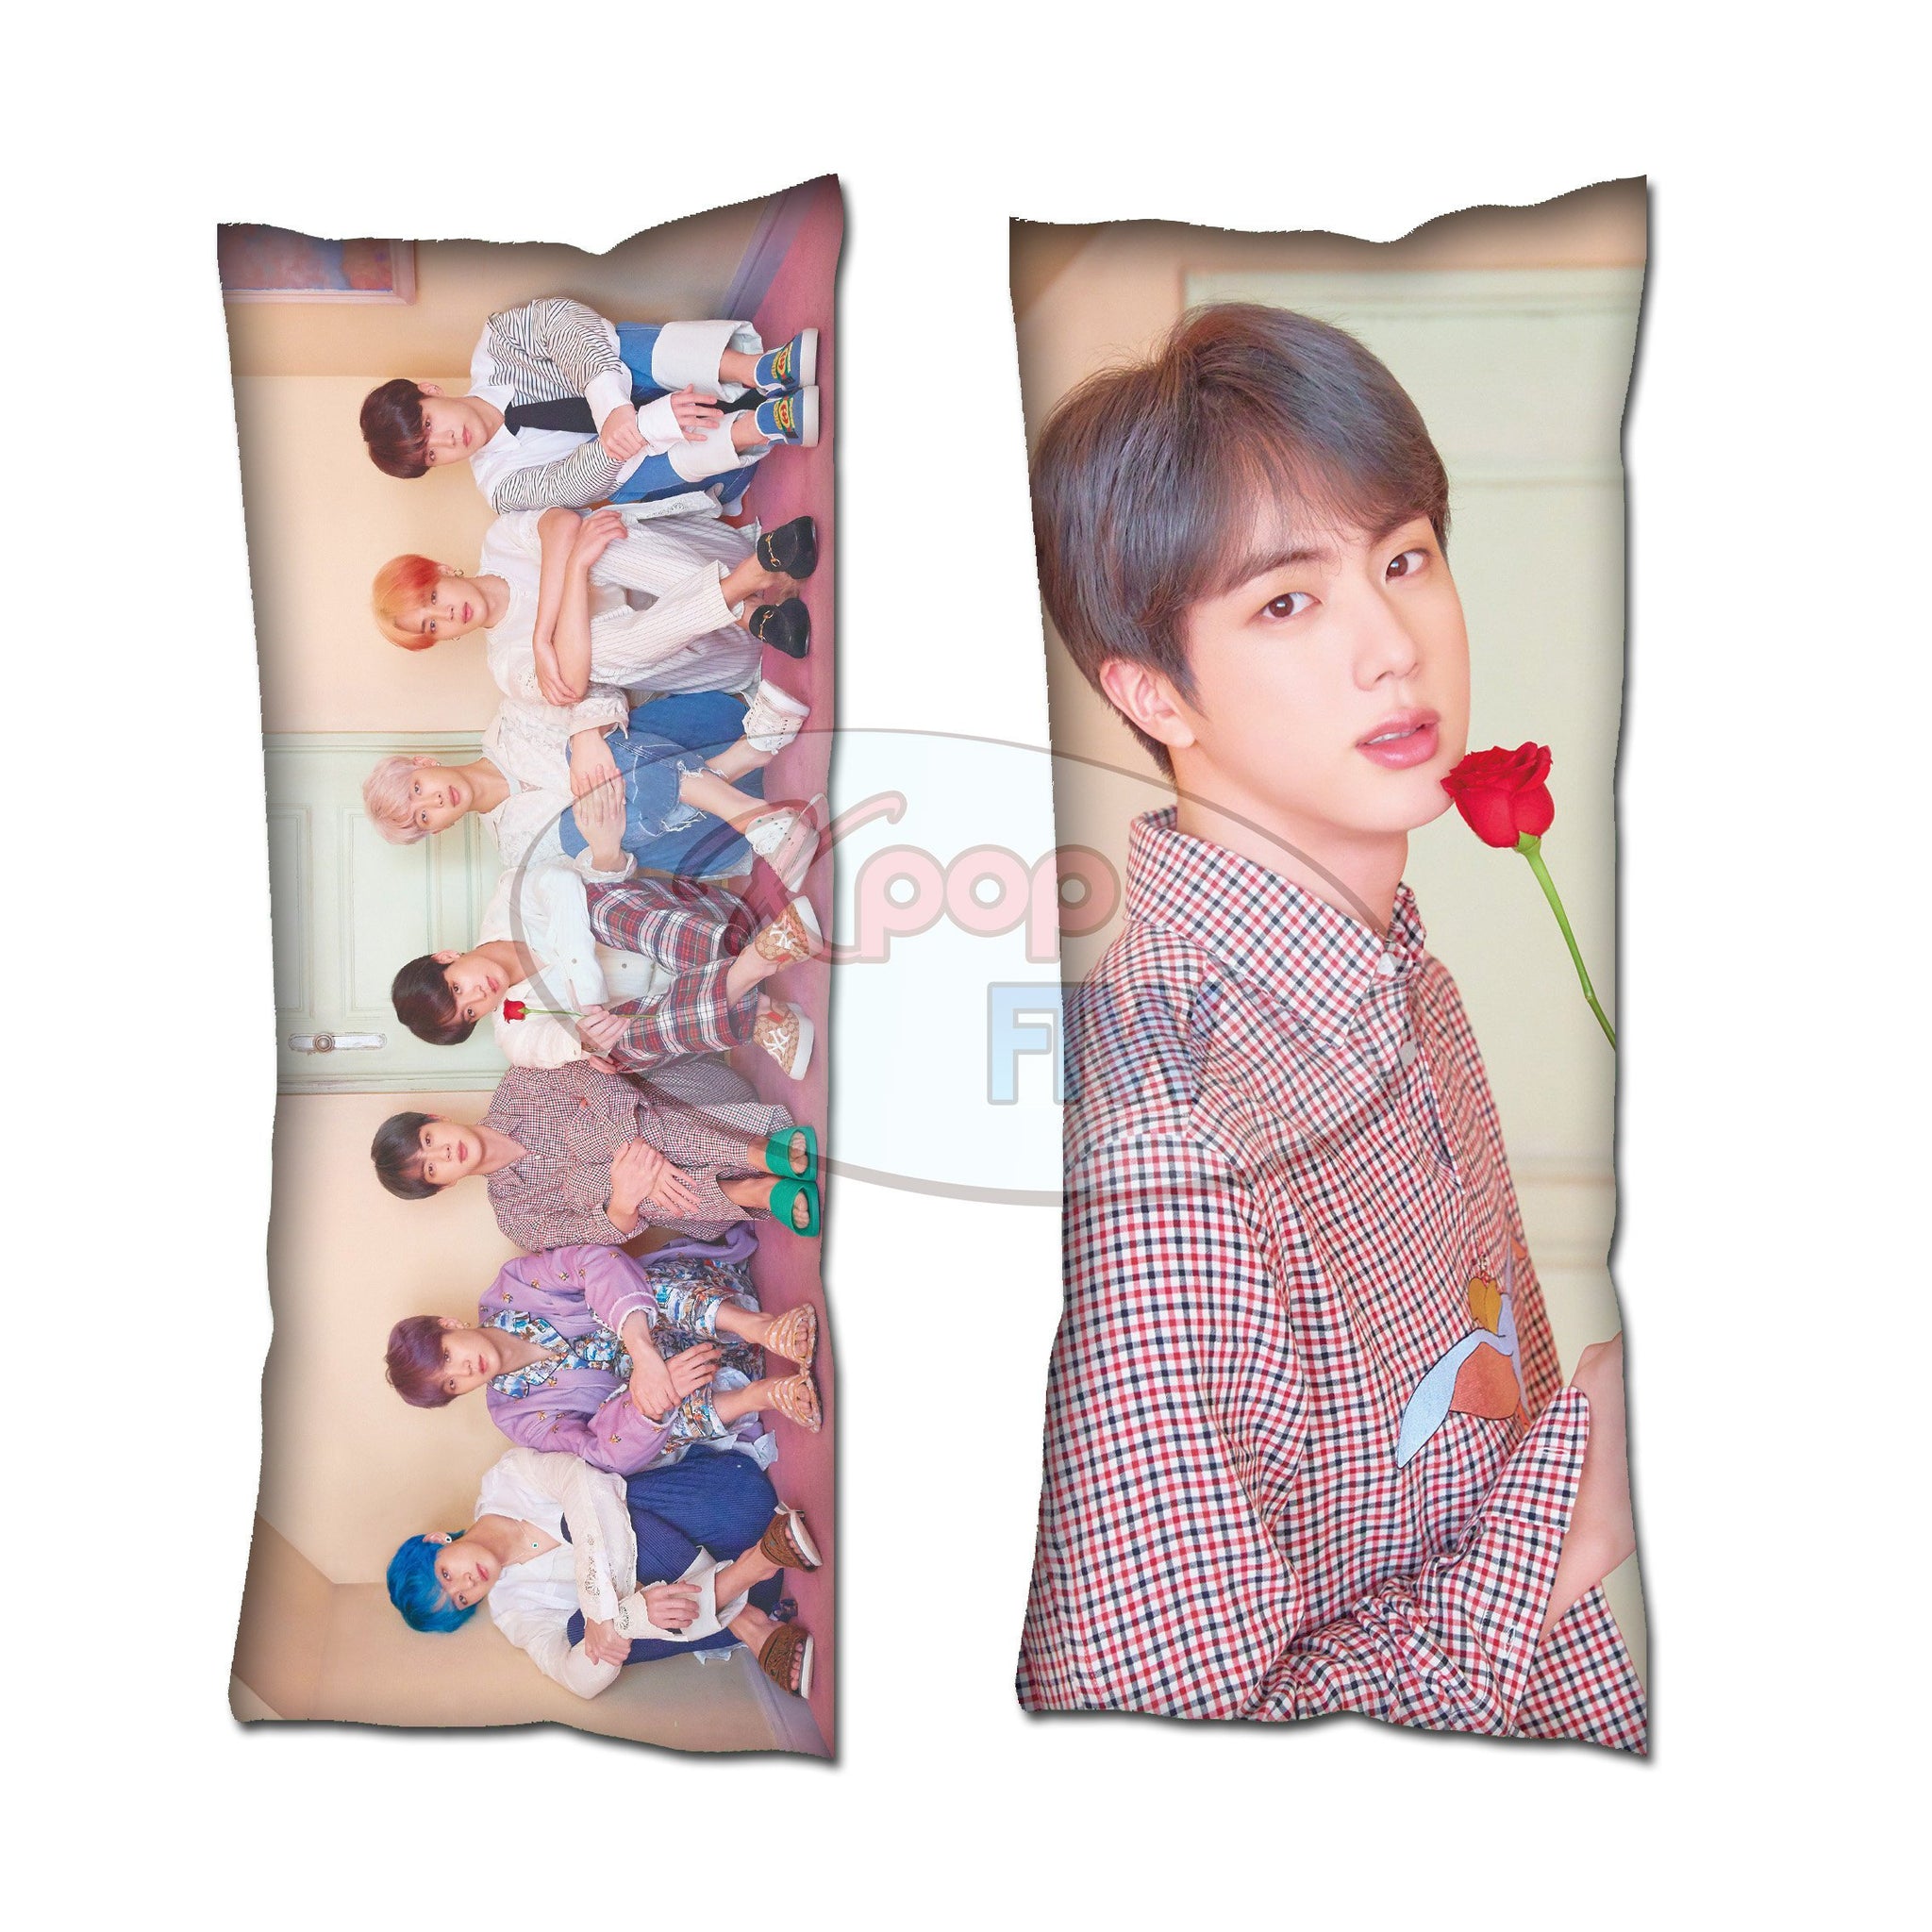 Jin Smile Bts Pillow Case Cover